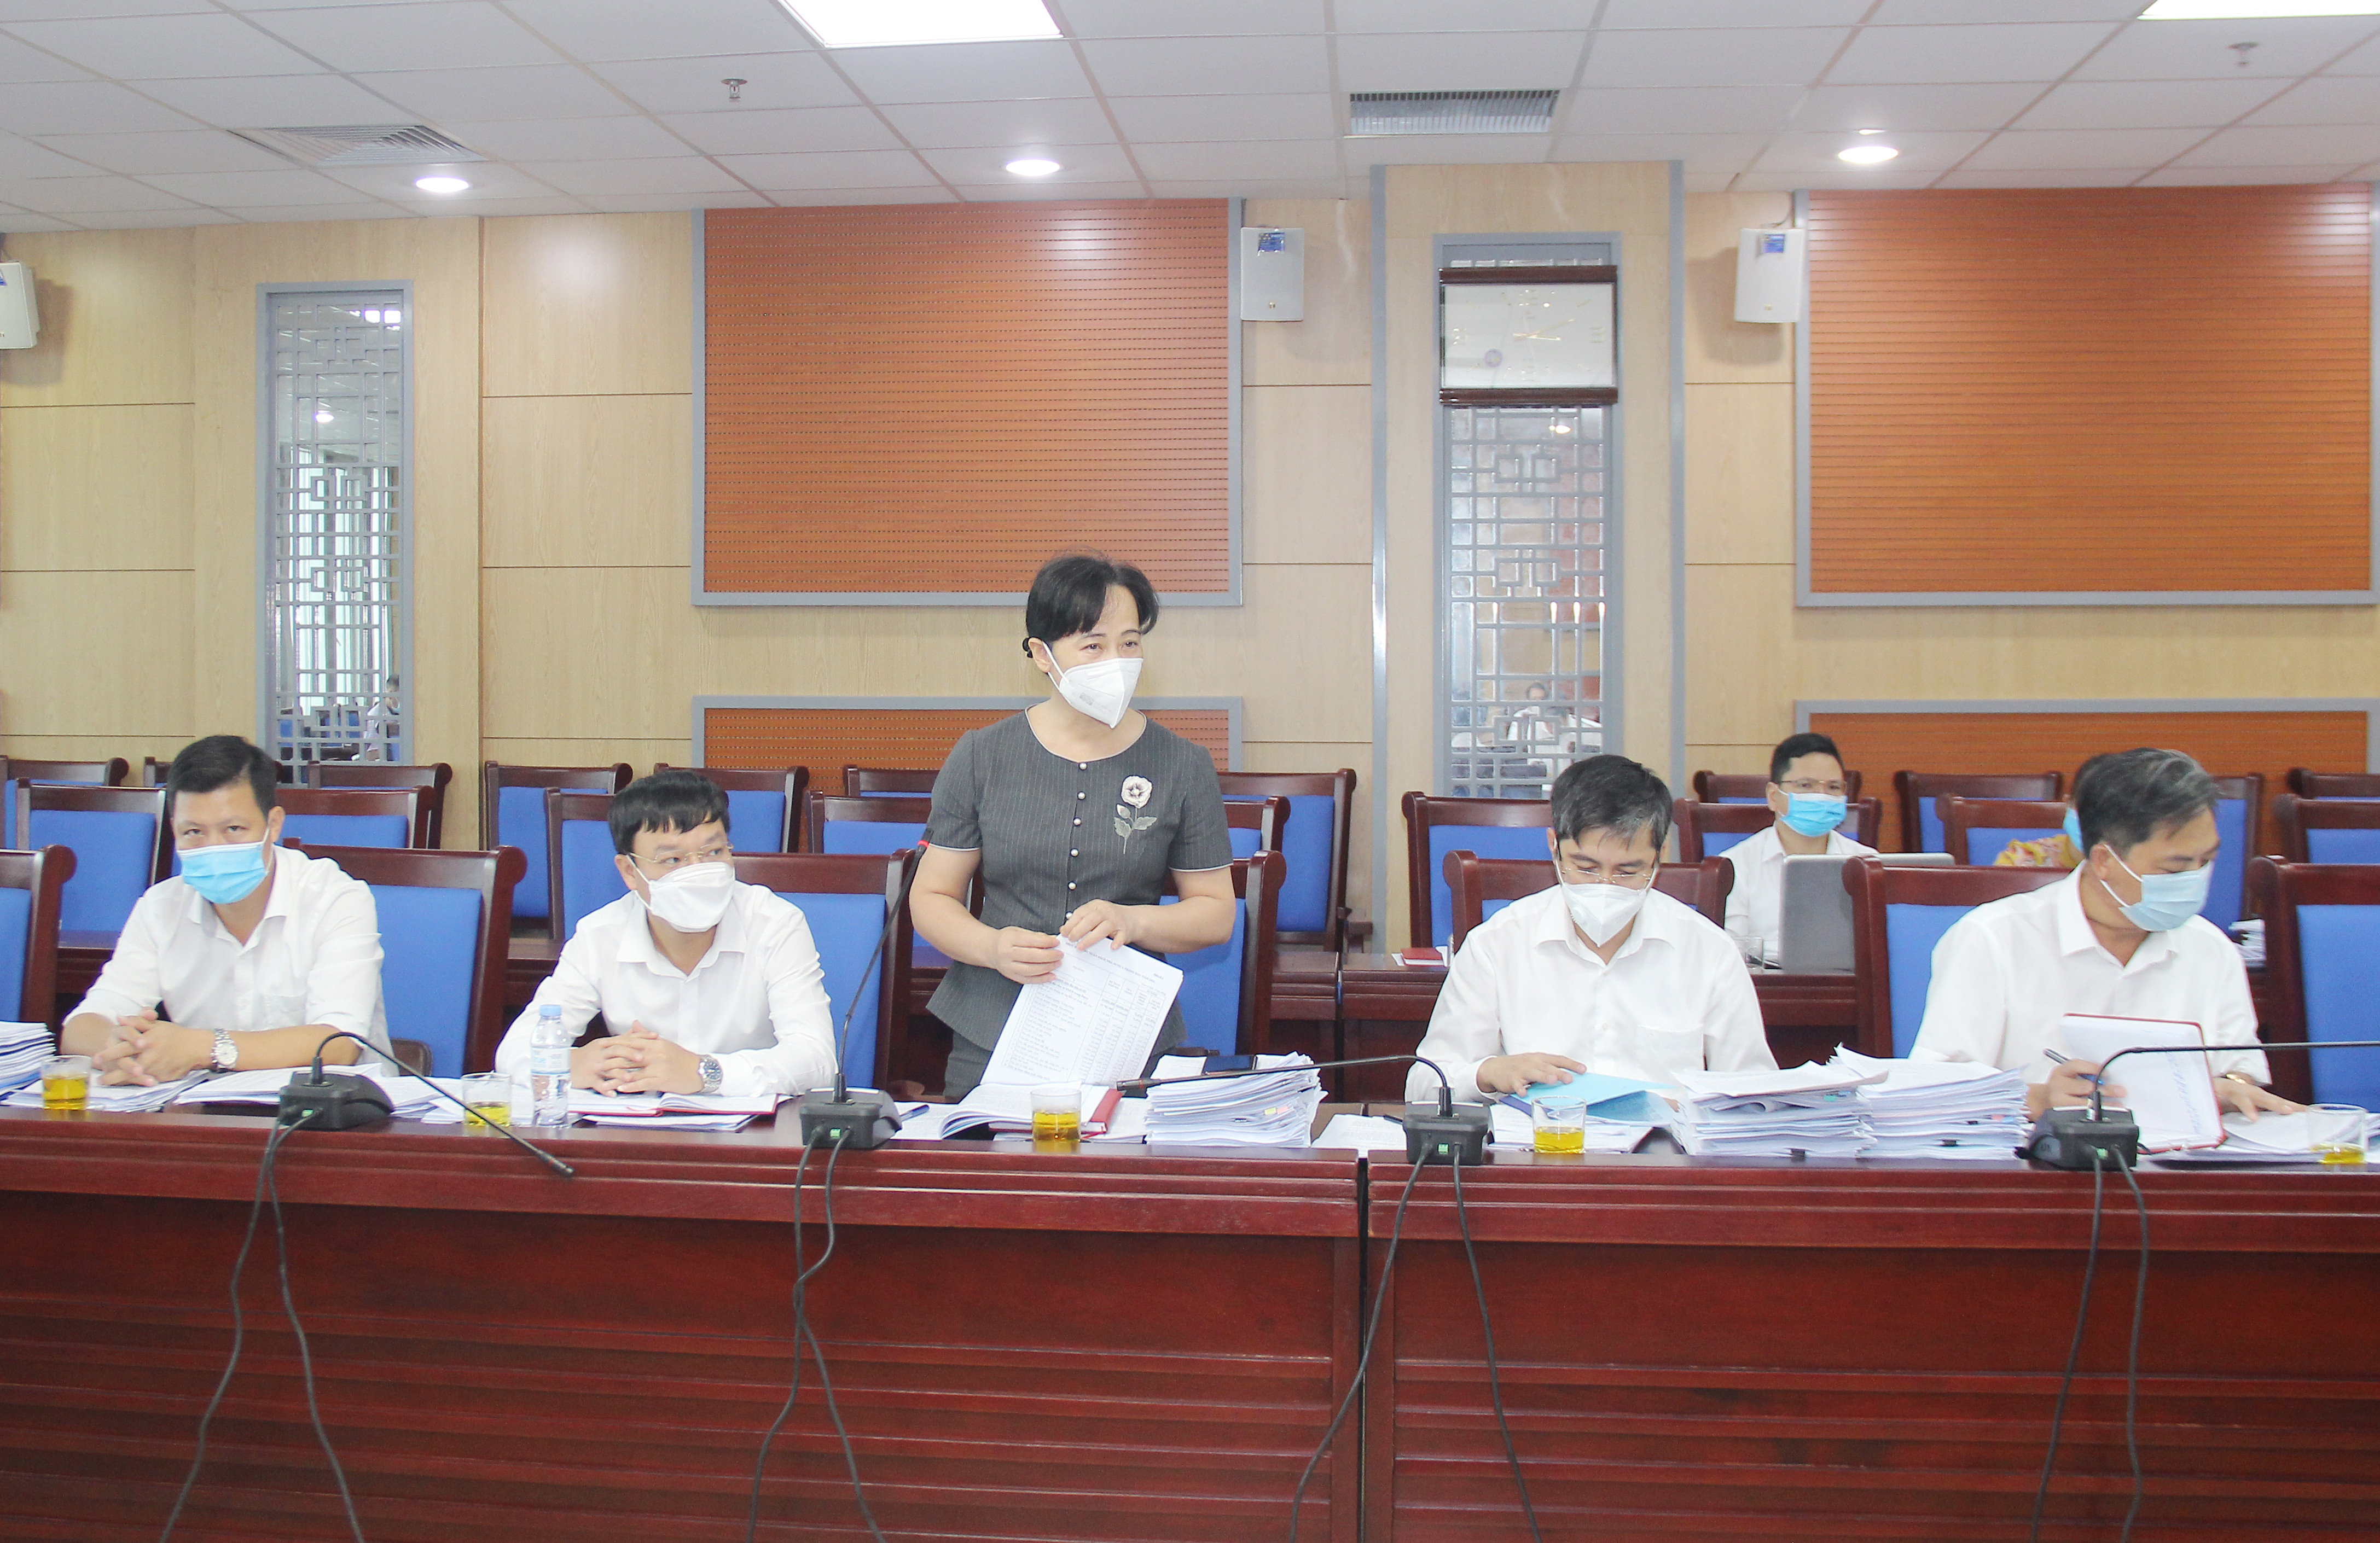 Đồng chí Phan Thị Hoan - Bí thư Đảng ủy khối Doanh nghiệp, thành viên Ban Kinh tế - Ngân sách HĐND tỉnh băn khoăn về chỉ tiêu chi đầu tư phát triển giai đoạn 